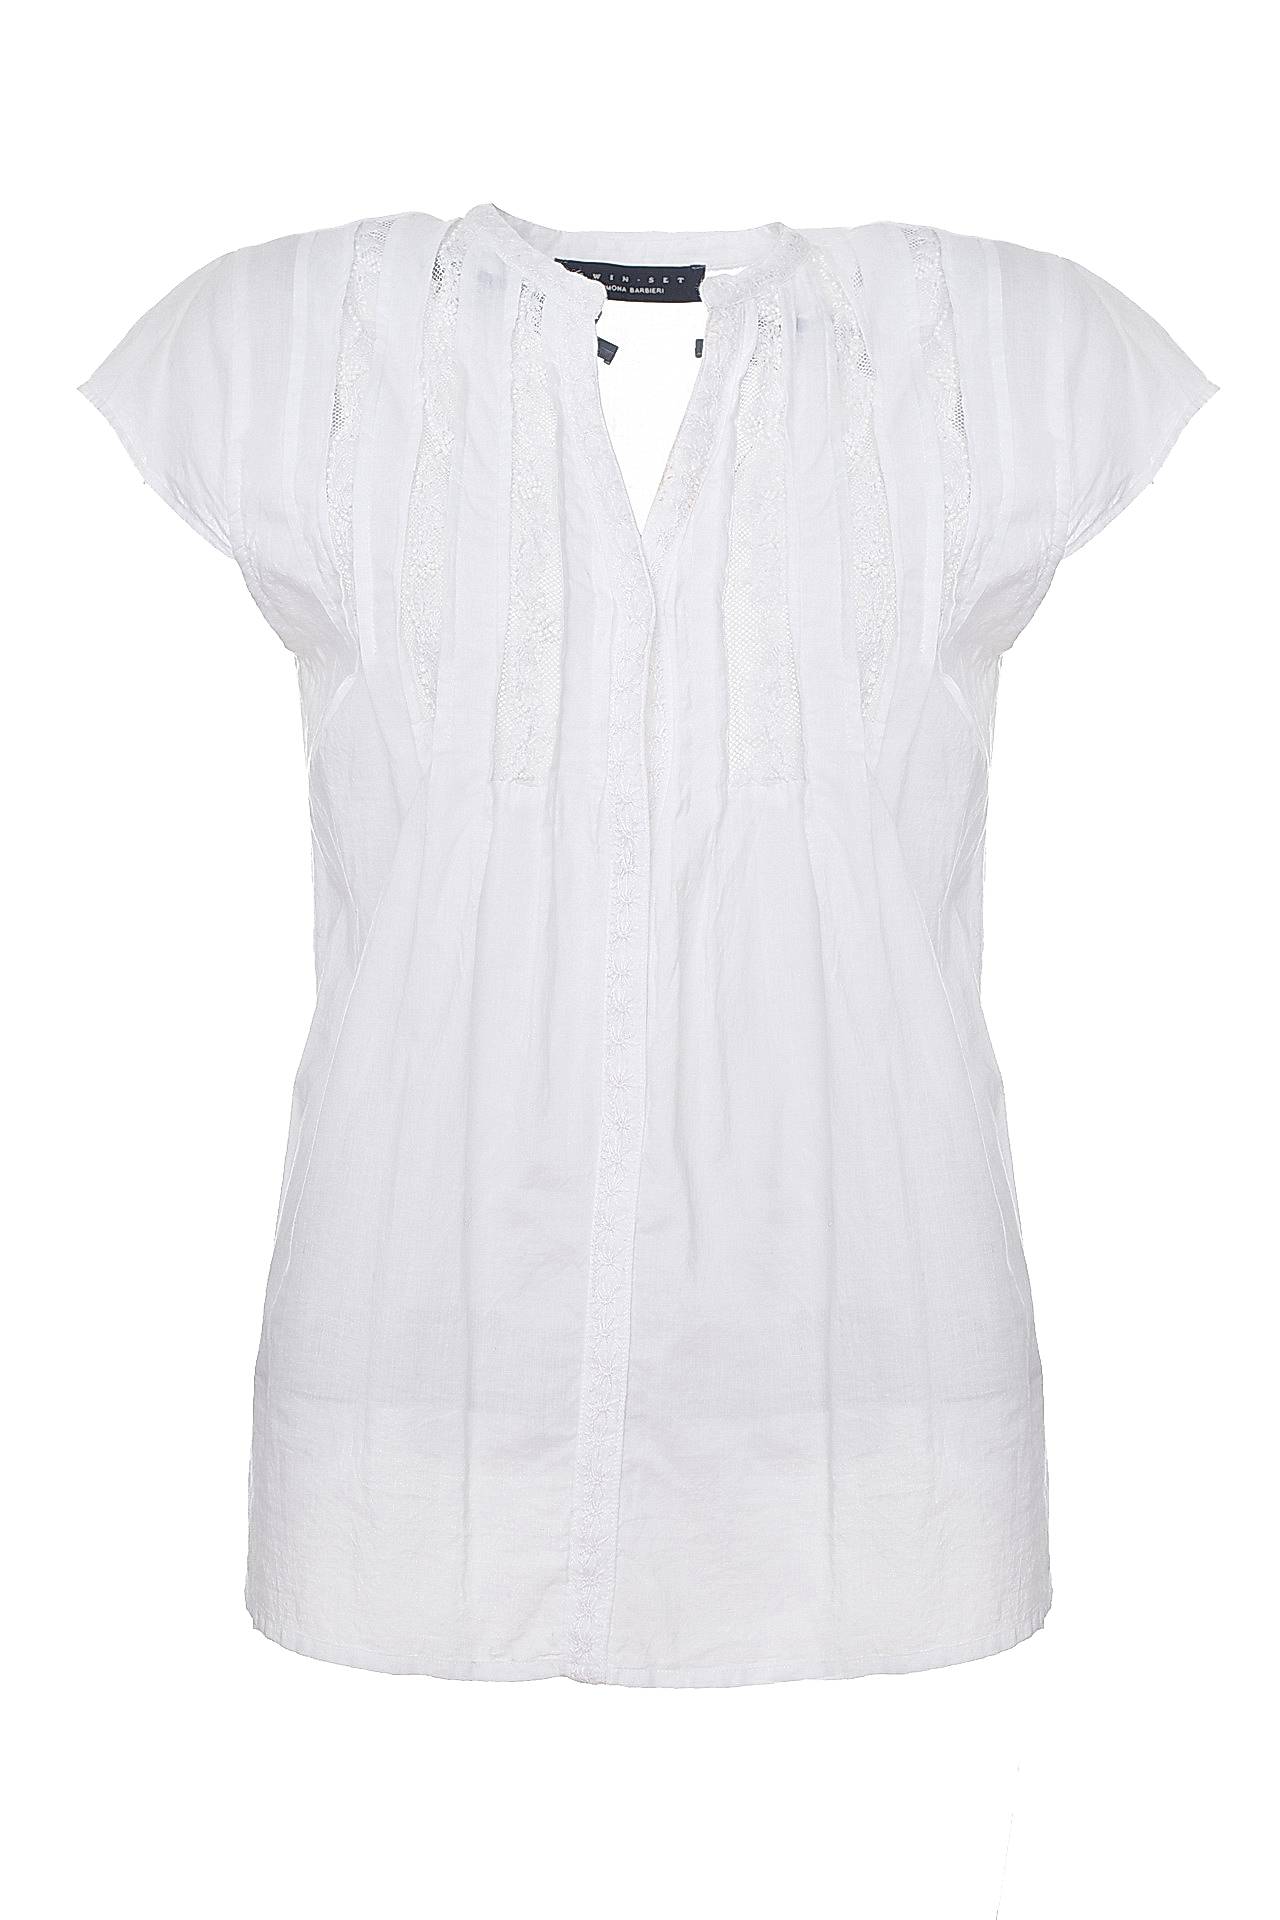 Одежда женская Кофта TWIN-SET (1812642211/18). Купить за 3600 руб.